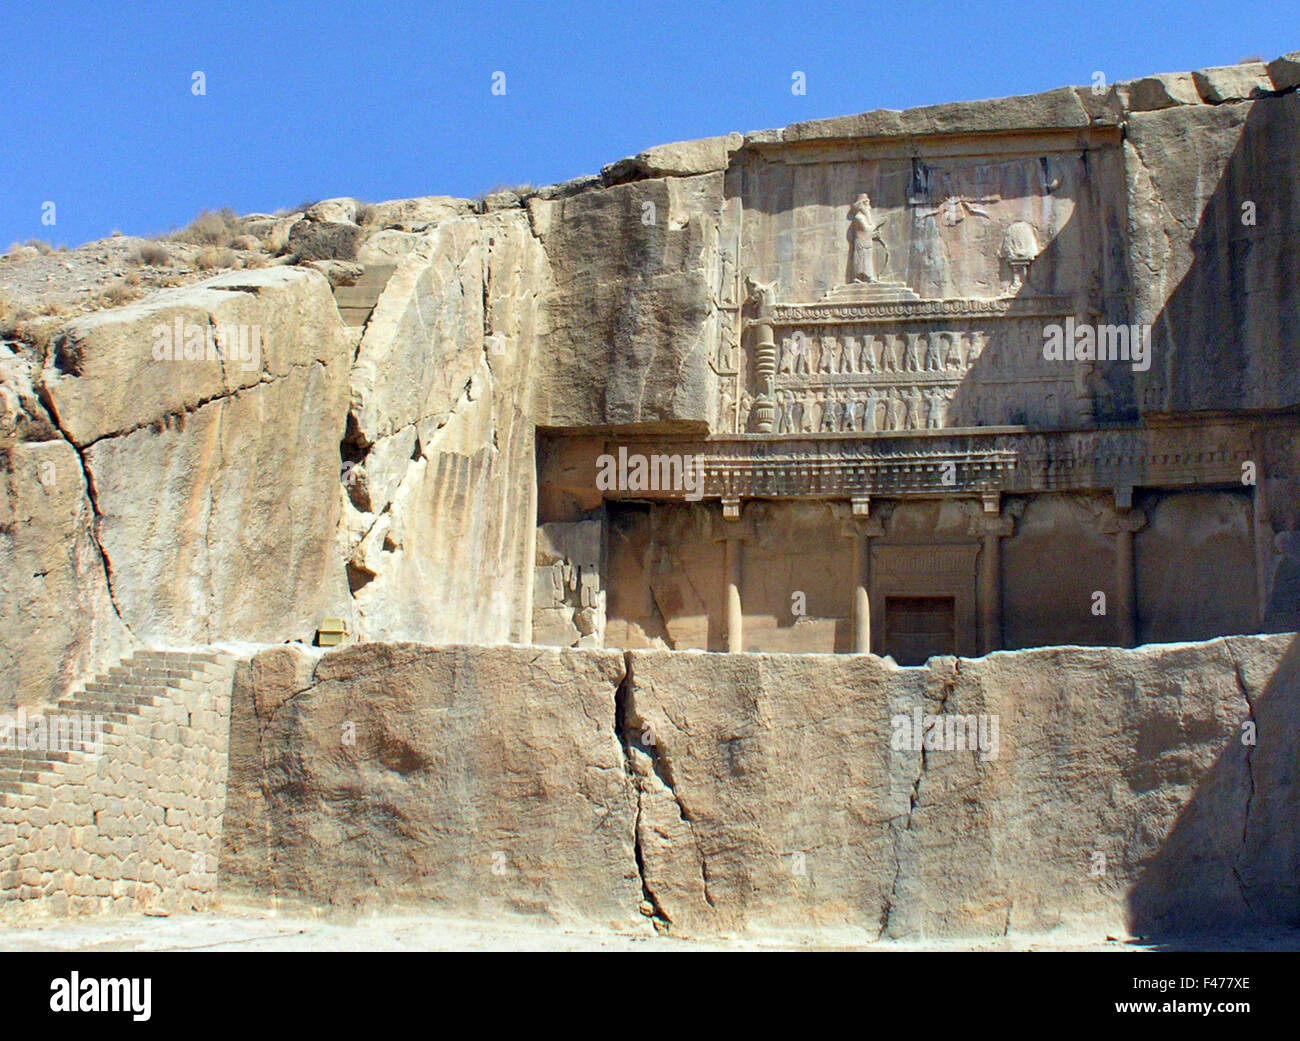 5824. Tomba di Serse III. In Persepolis. Xerxes (Artaserse o Dario - nato 425 - 338 BC) re di Persia e l'undicesima Empe Foto Stock